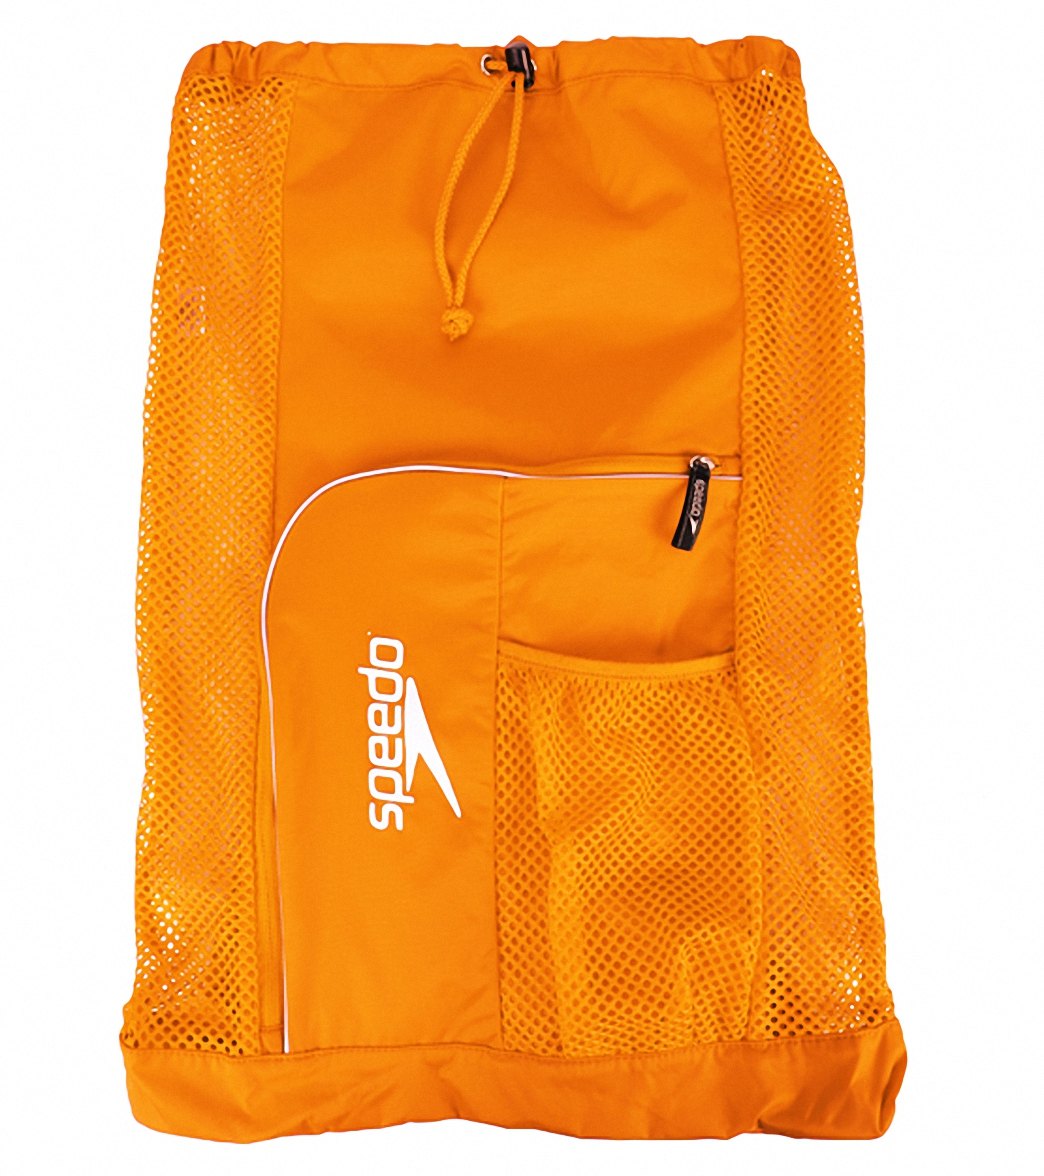 Speedo Deluxe Ventilator Mesh Bag - Bright Marigold - Swimoutlet.com